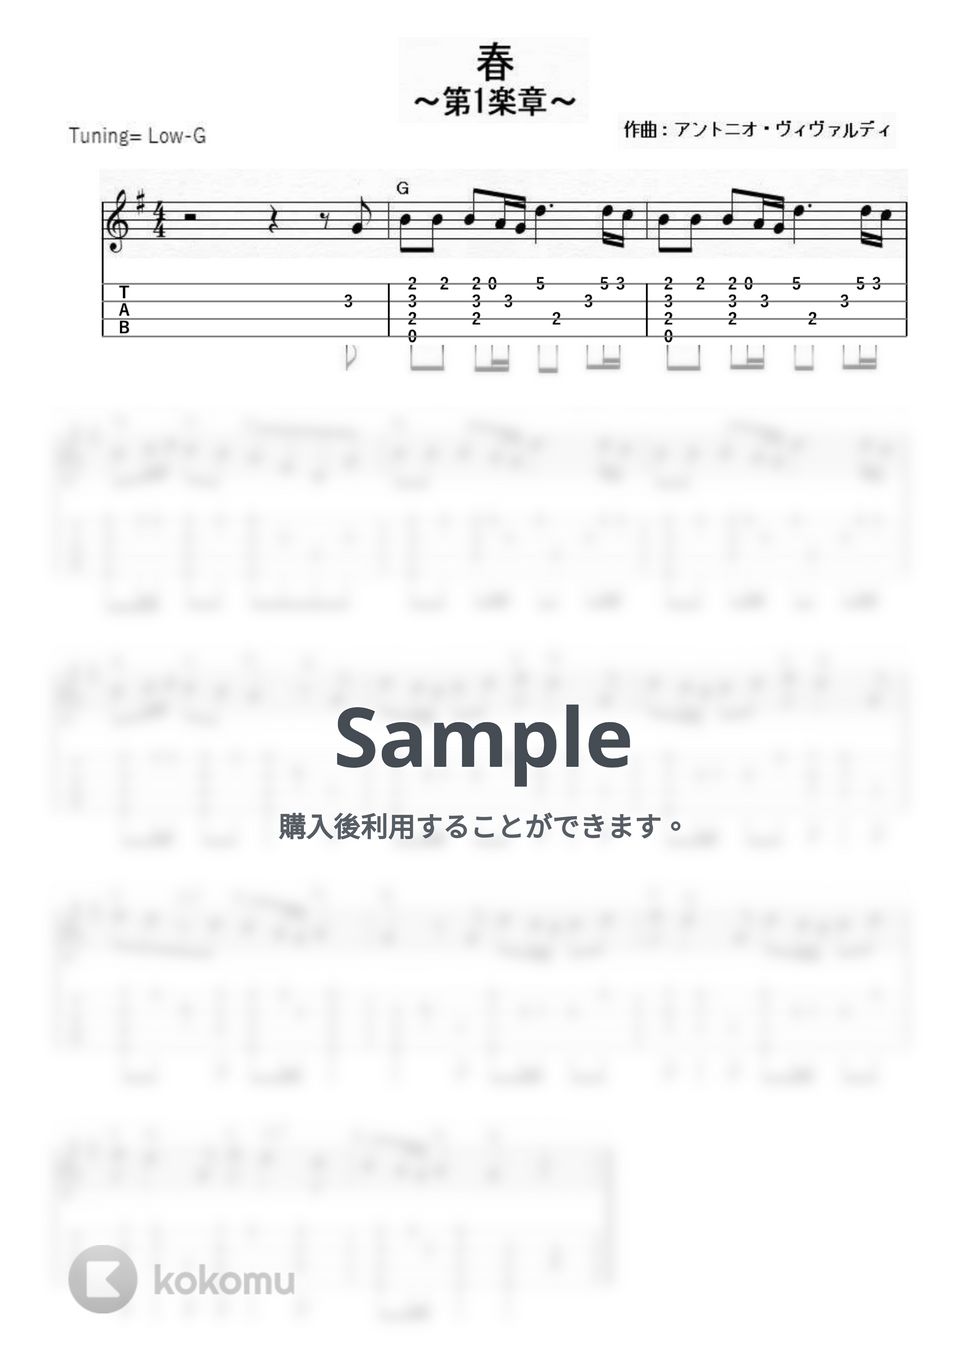 ヴィヴァルディ - 四季 (ｳｸﾚﾚｿﾛ/Low-G/中級) by ukulelepapa